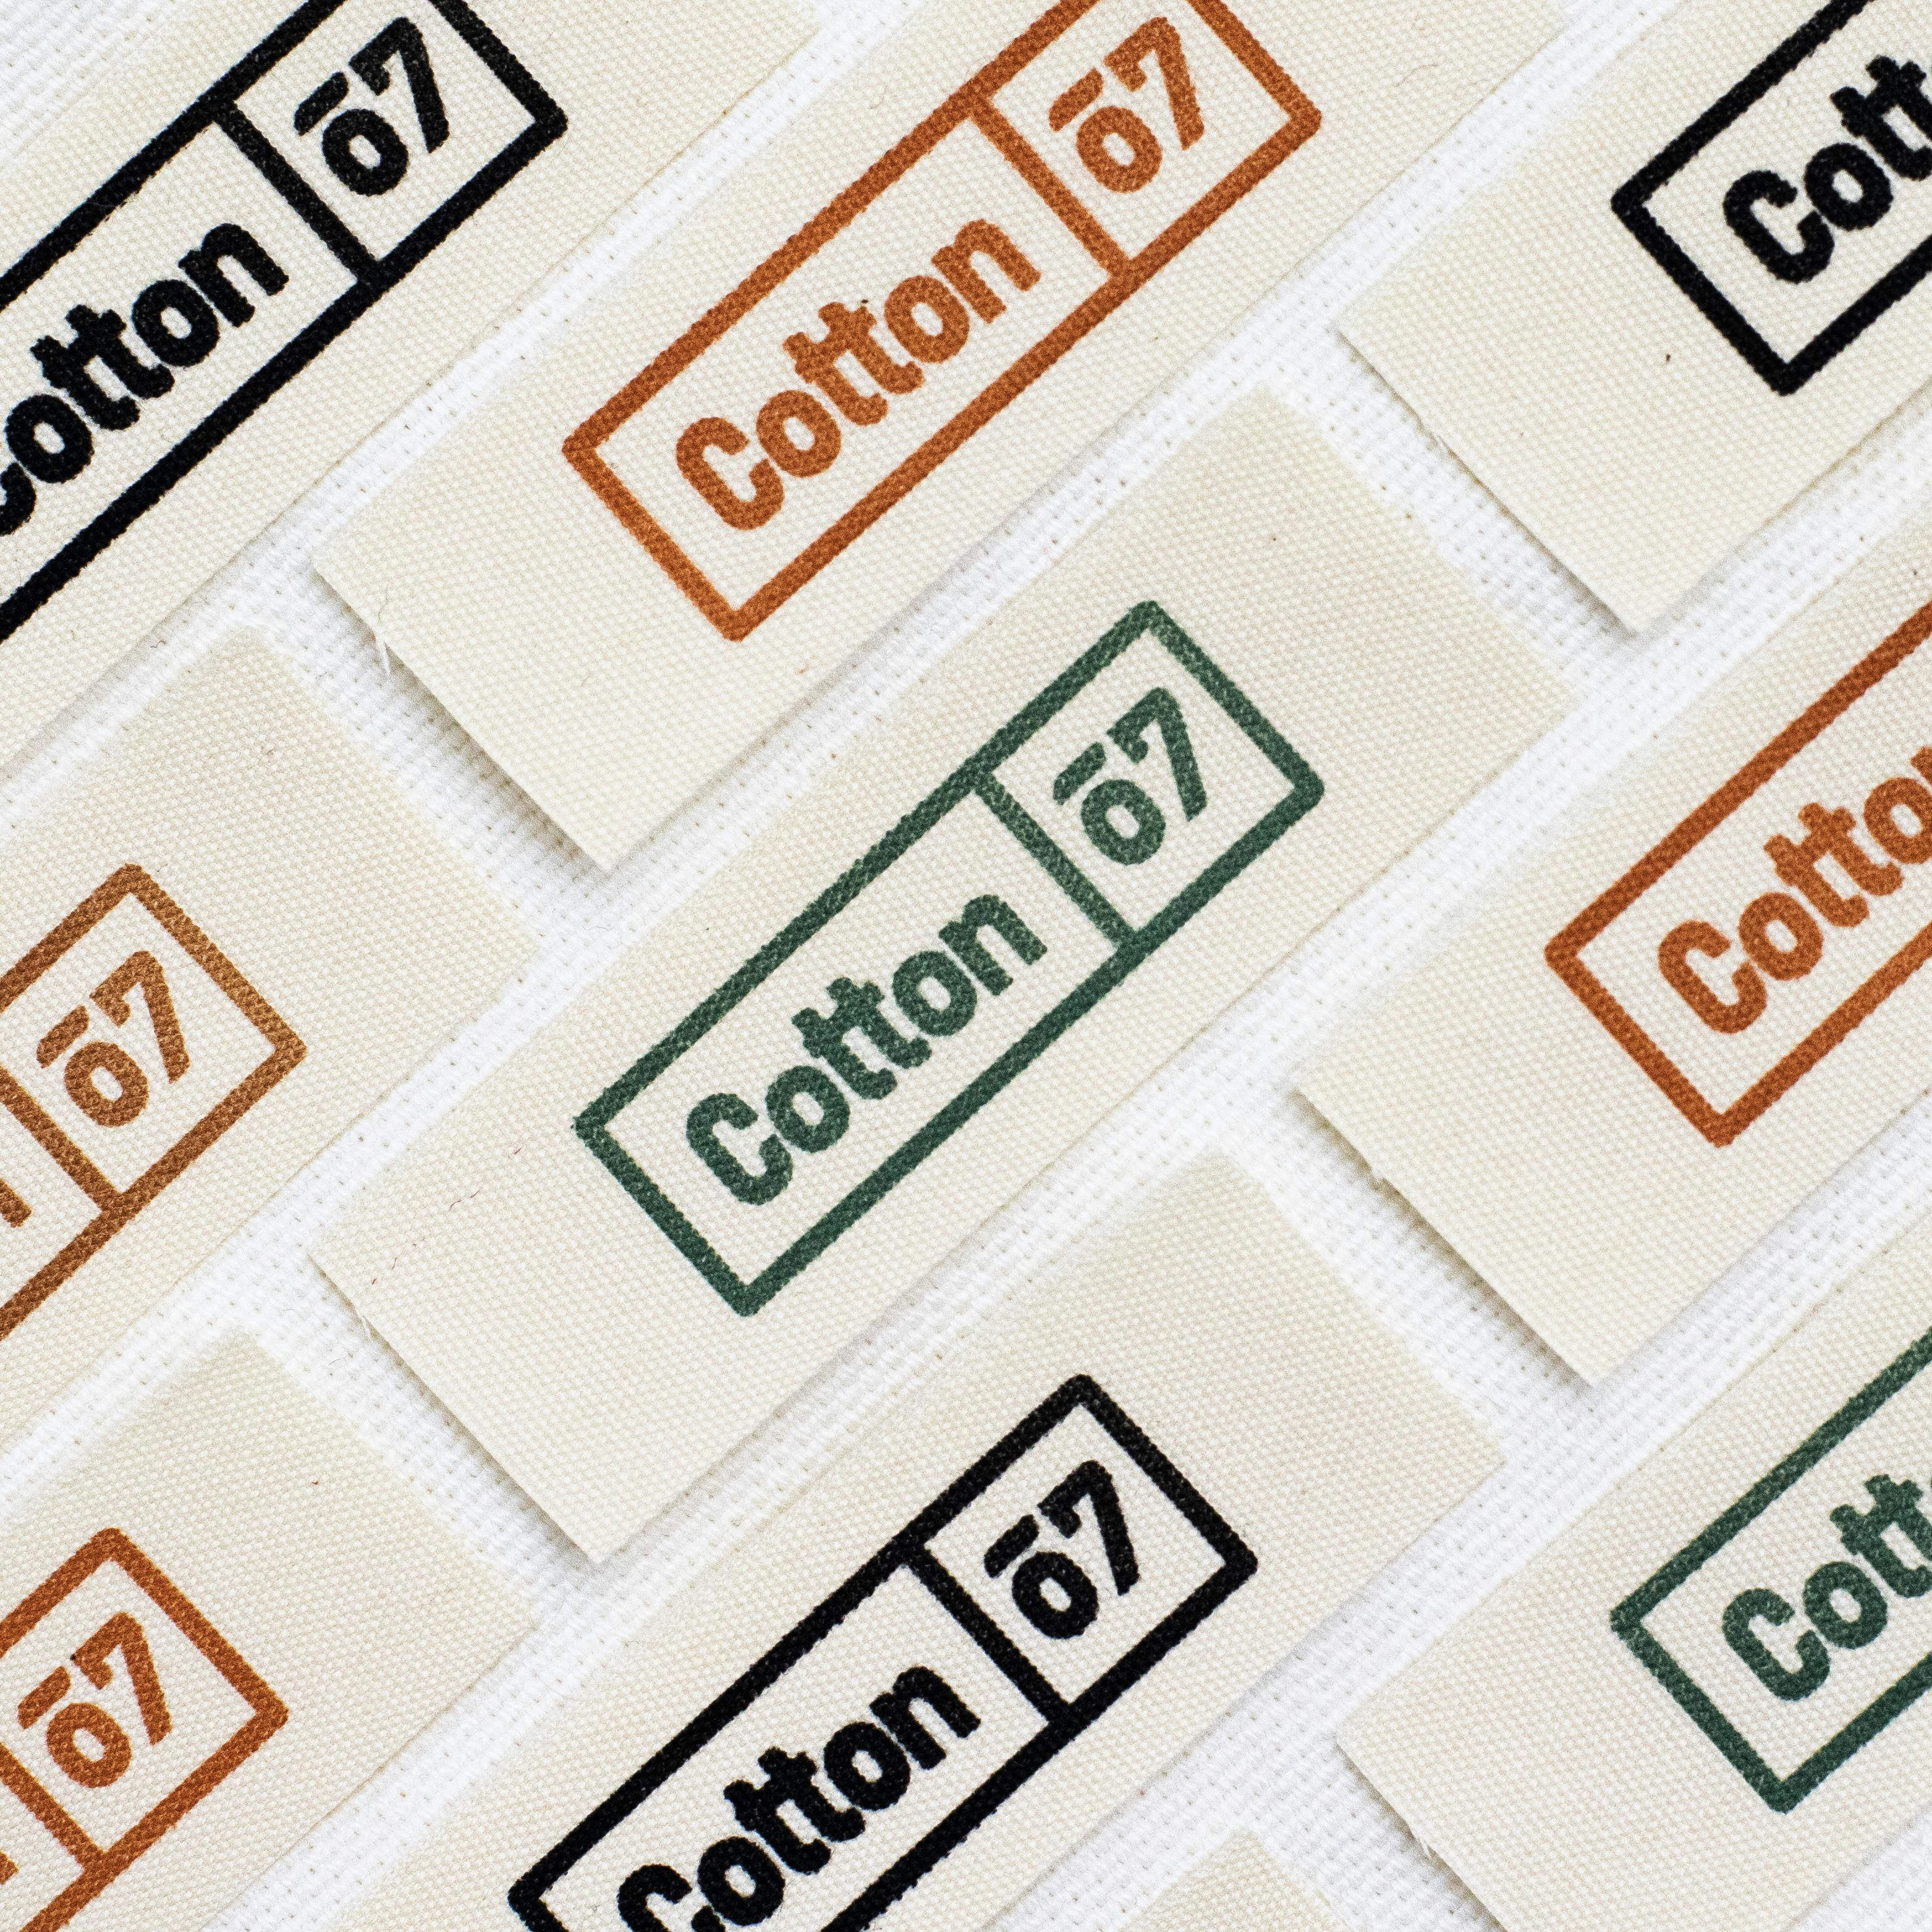  Etiquetas de algodón